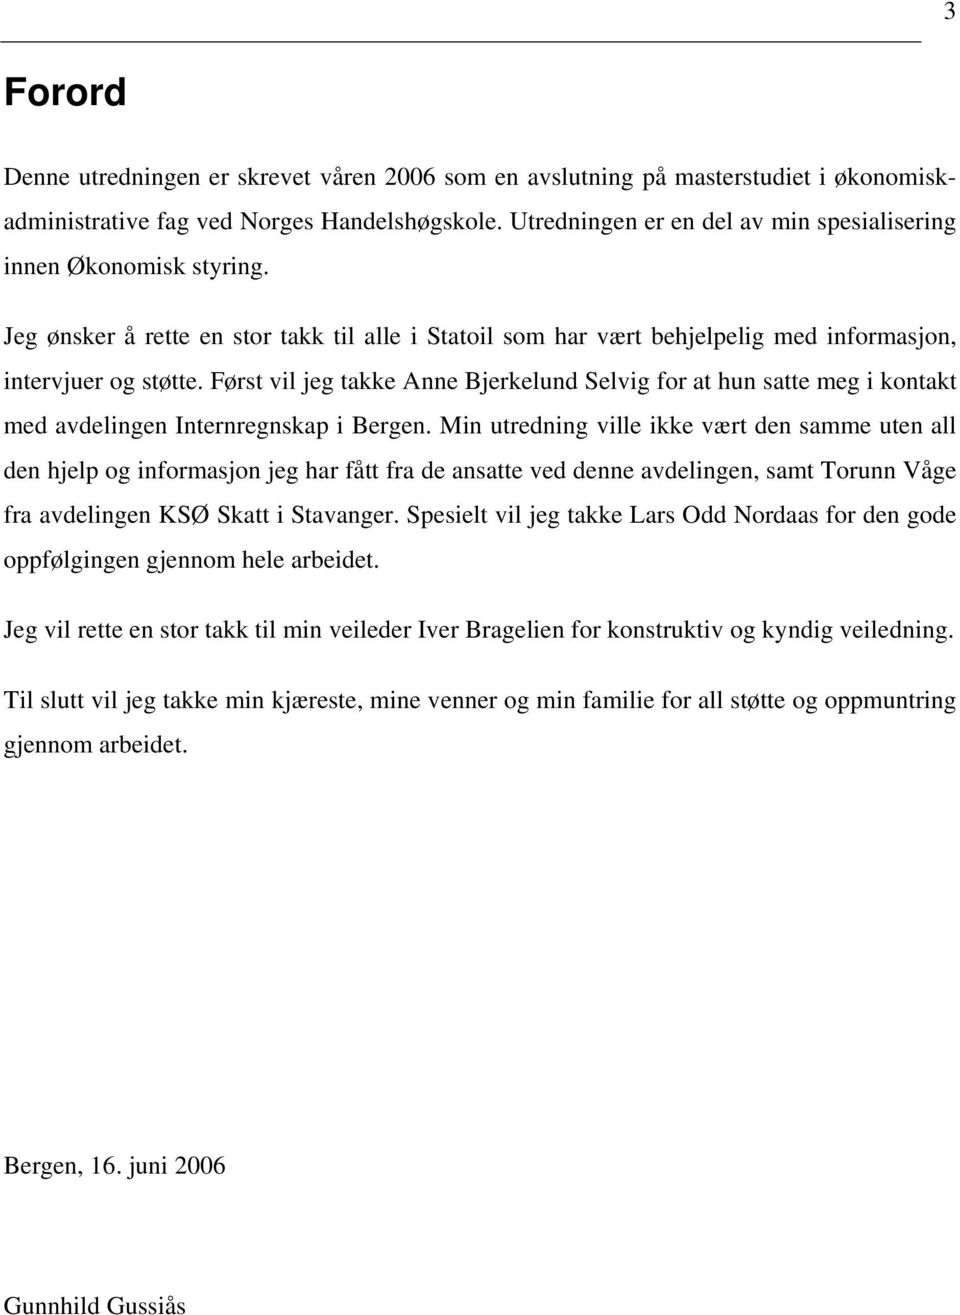 Først vil jeg takke Anne Bjerkelund Selvig for at hun satte meg i kontakt med avdelingen Internregnskap i Bergen.